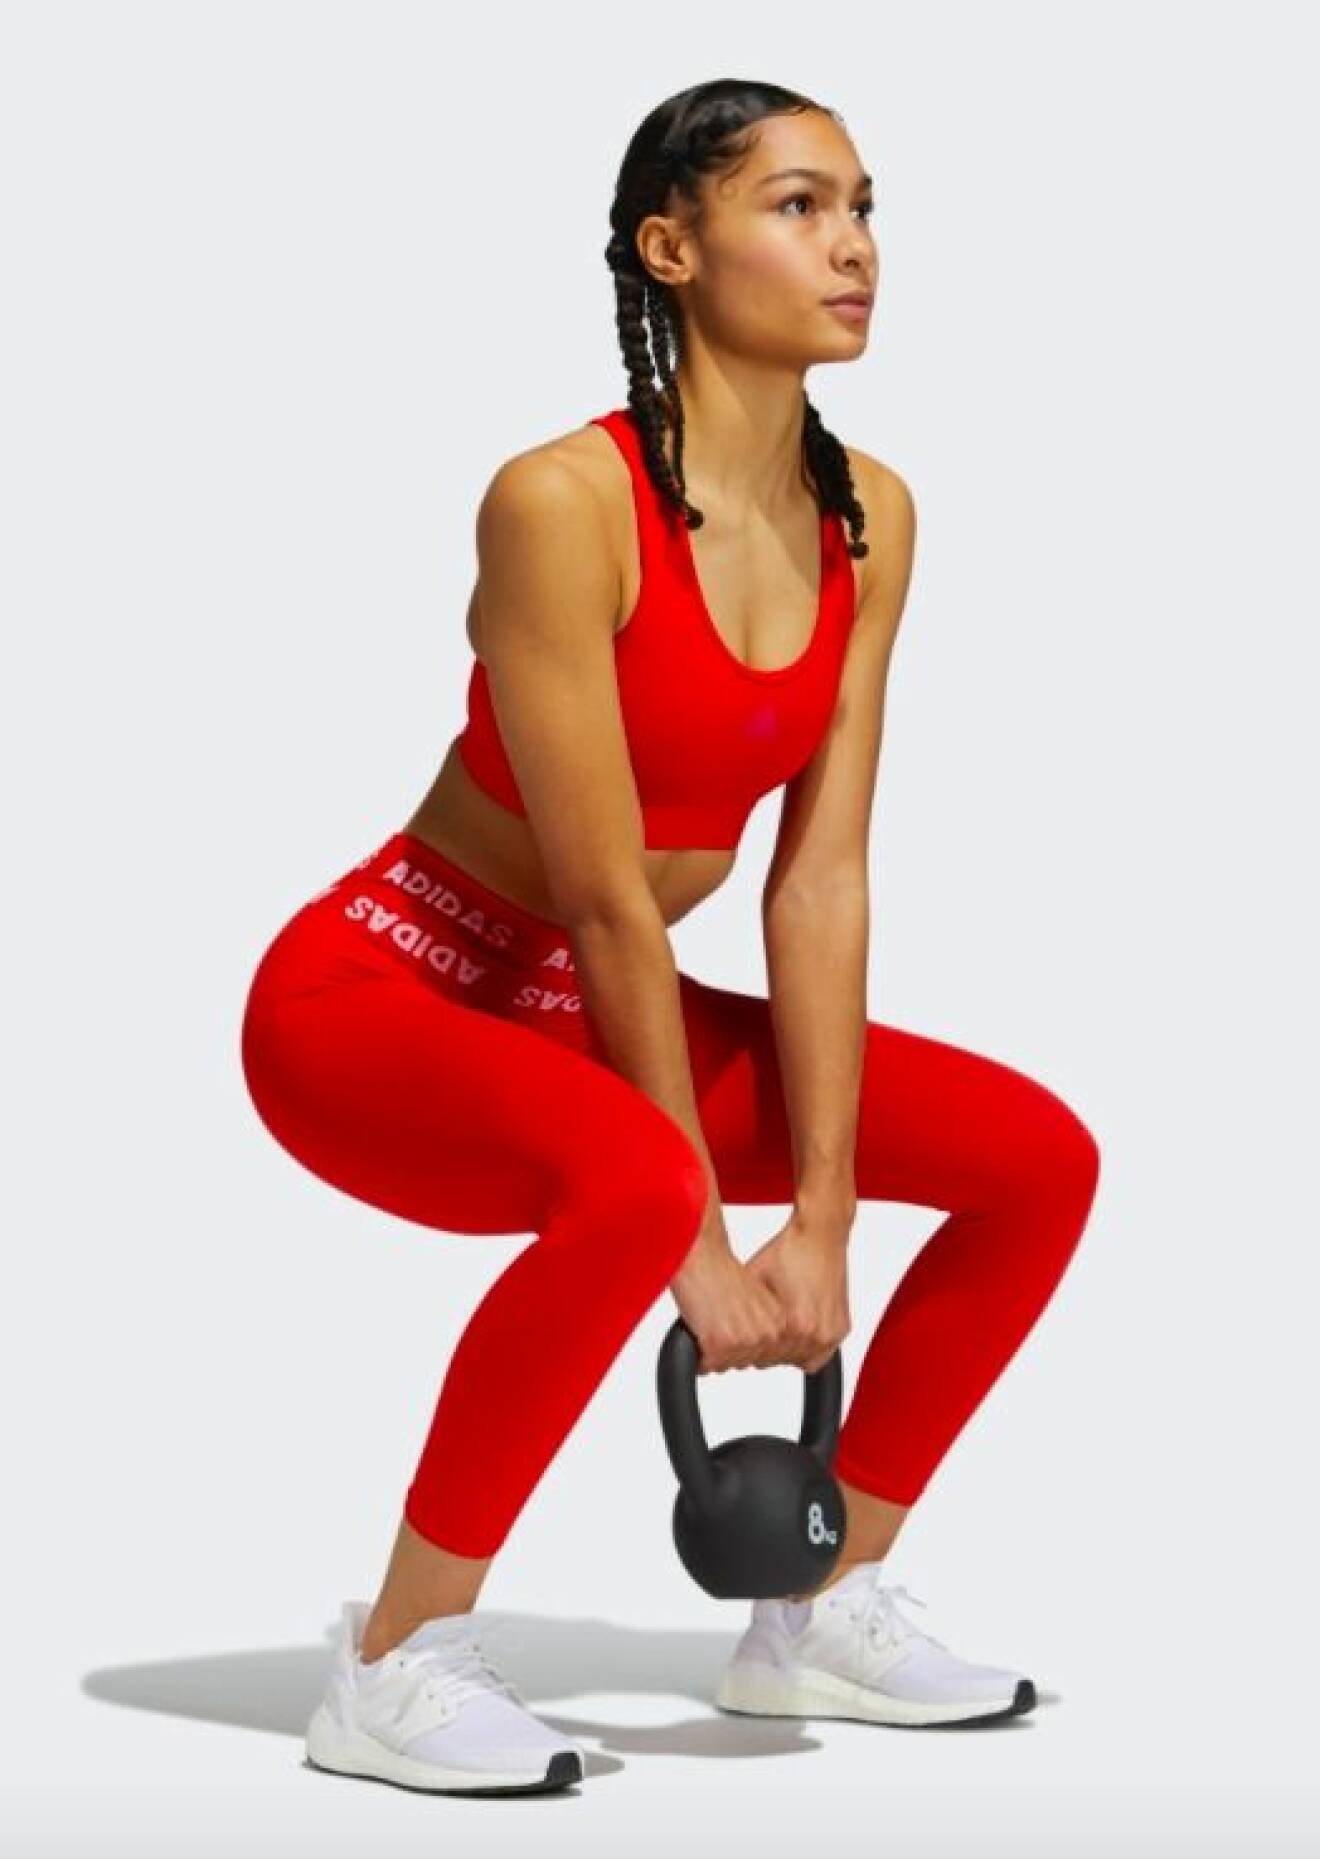 Modell med sporttopp och tights i knallrött från Adidas. Modellen lyfter en kettlebell på bilden.